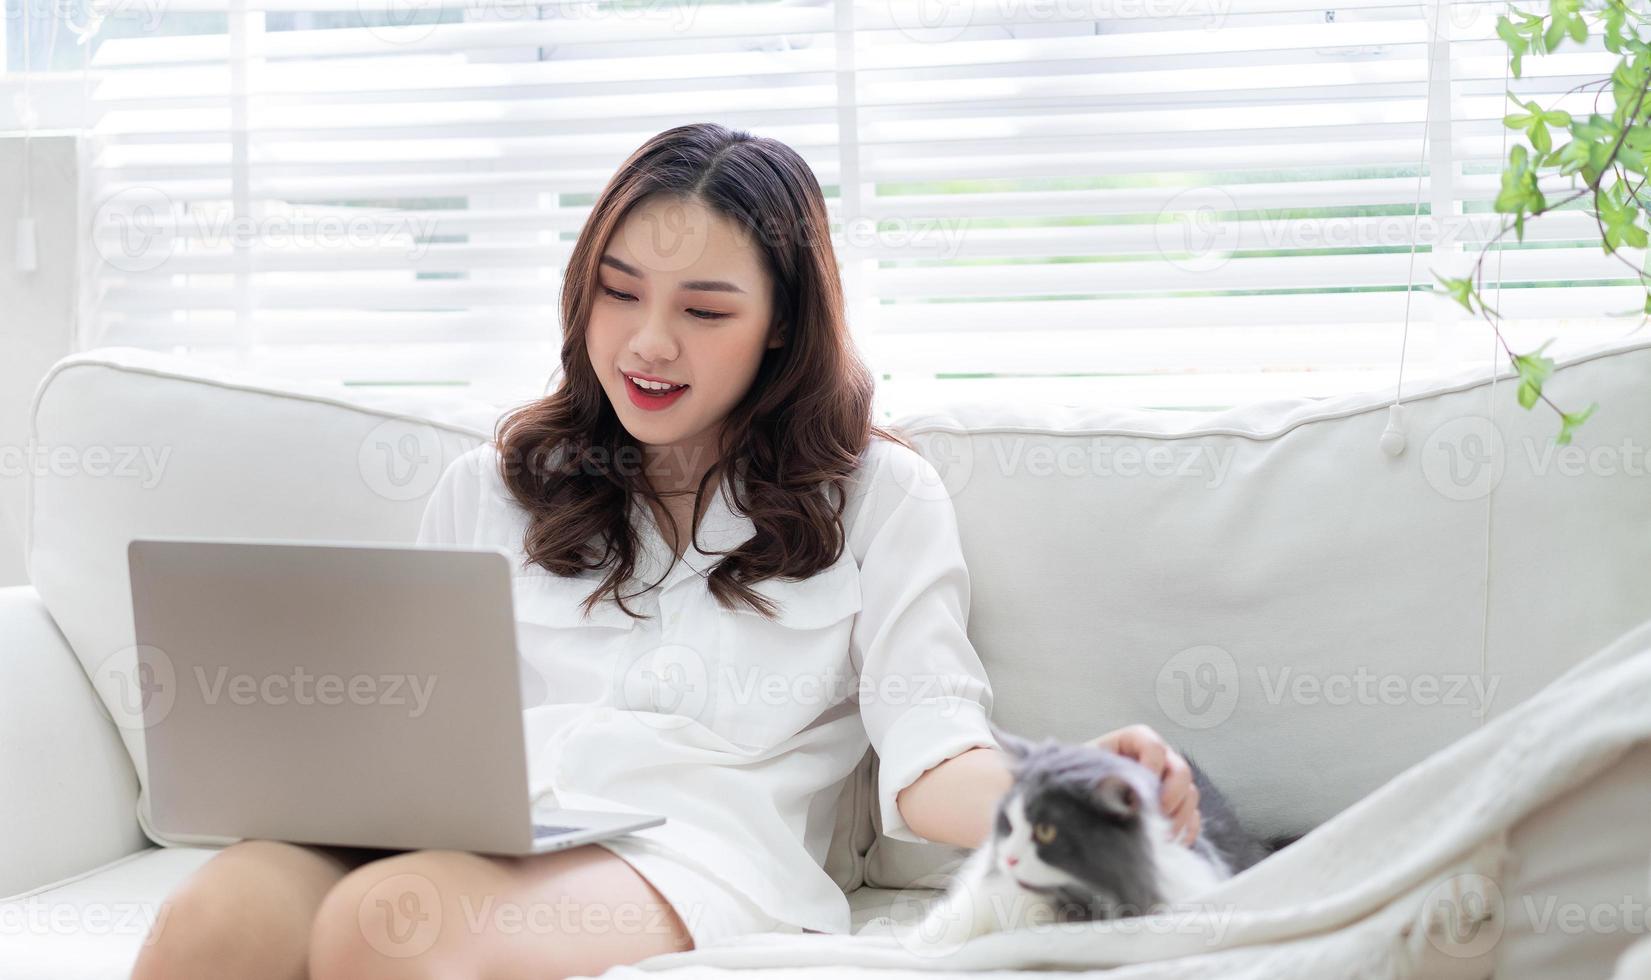 jeune femme d'affaires asiatique travaillant et jouant avec un chat photo